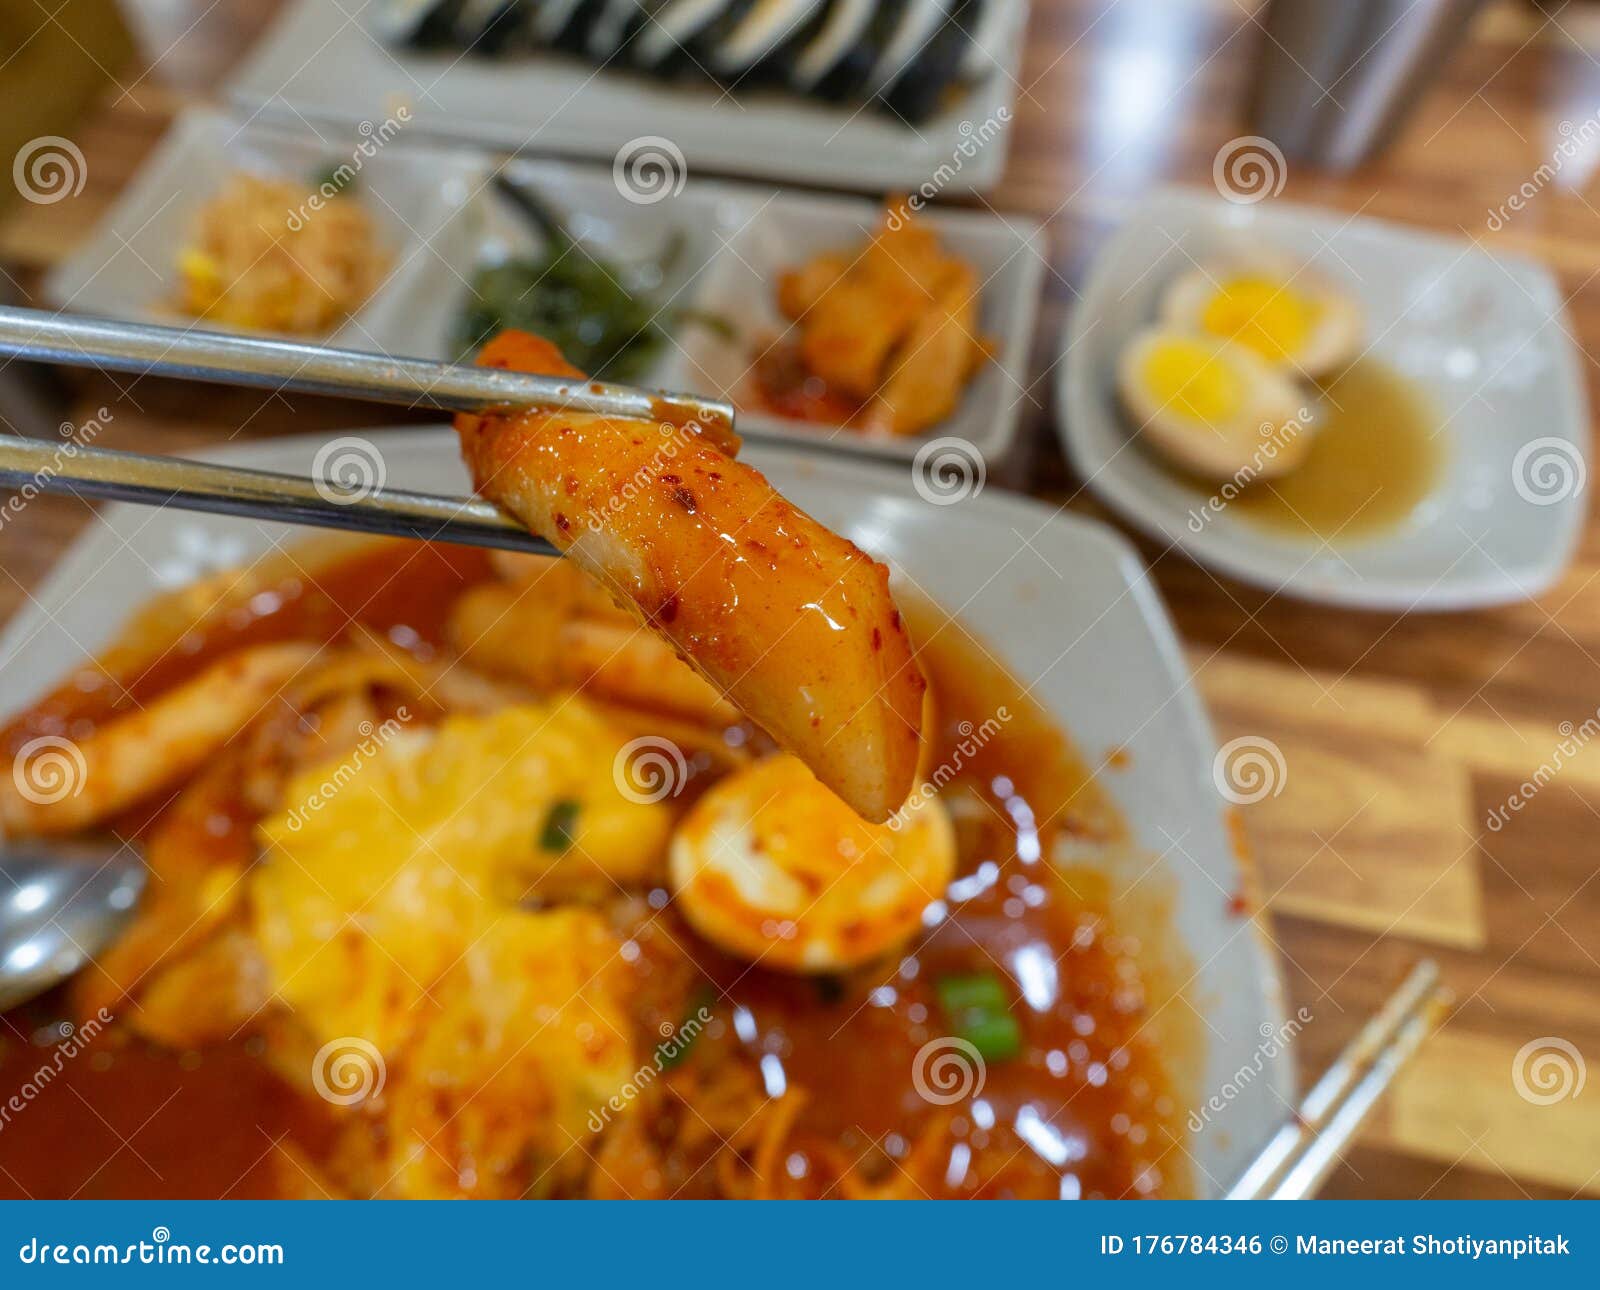 tteokbokki korean spicy rice cake cheese in korean restuarant